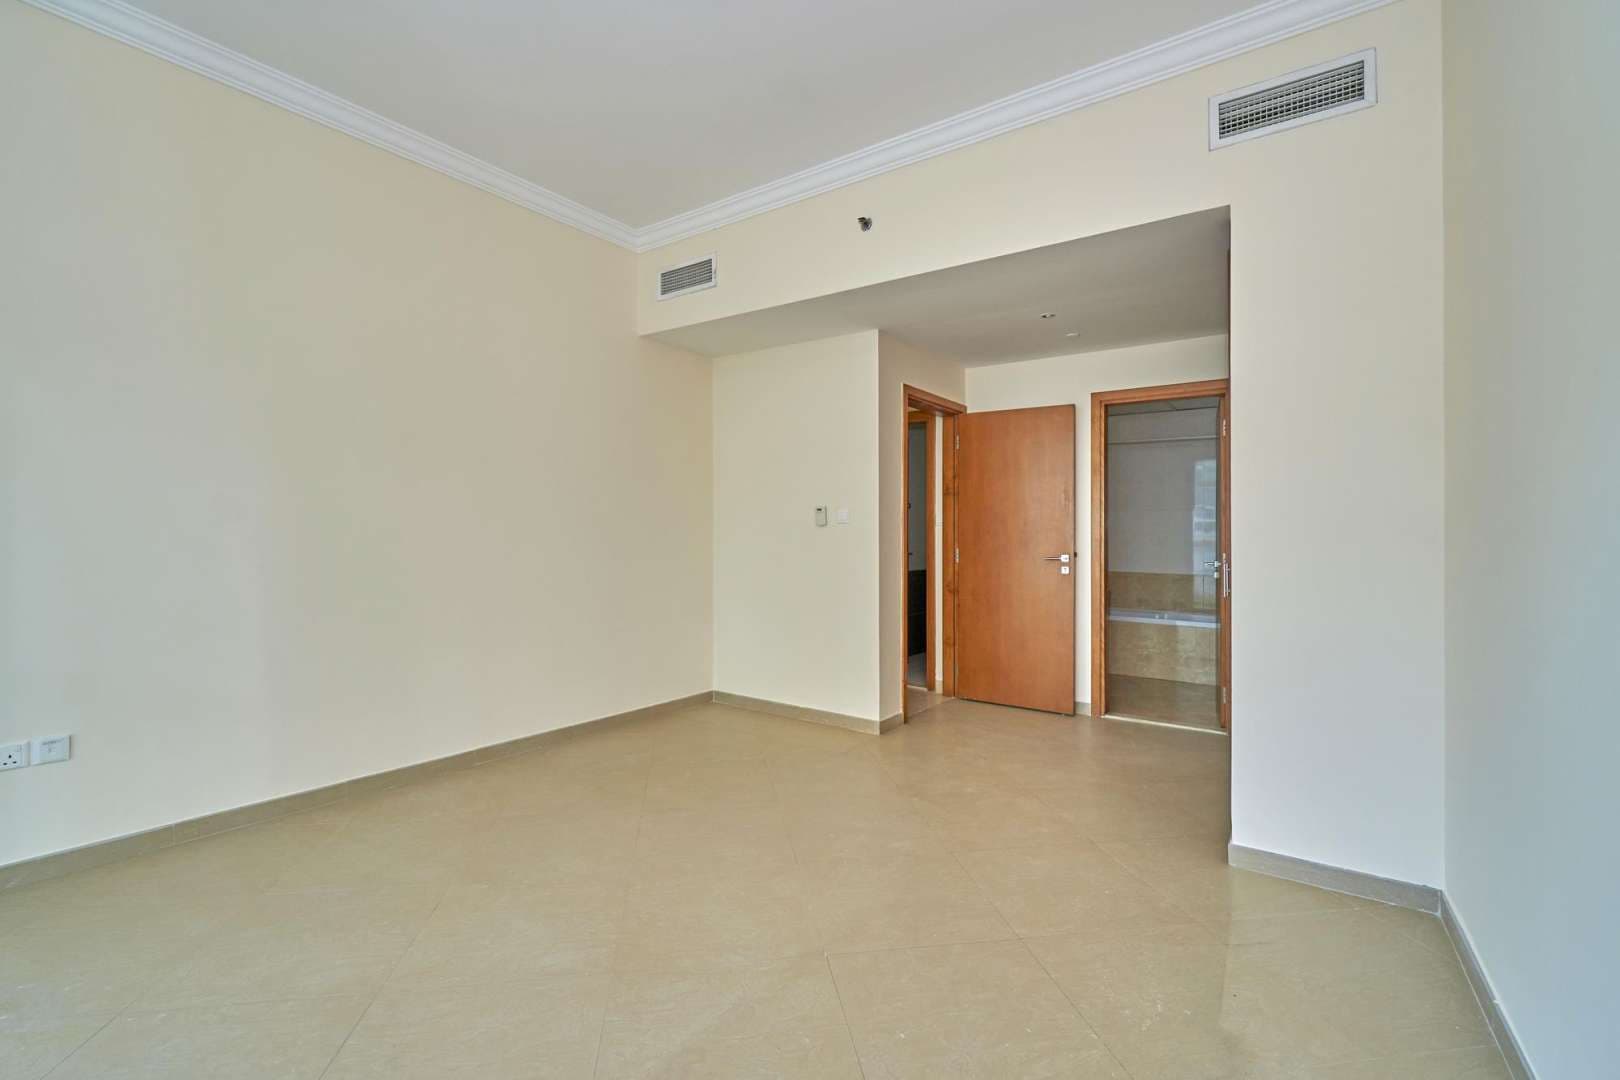 1 Bedroom Apartment For Rent Dorra Bay Lp05484 2815a655b4fa2800.jpg